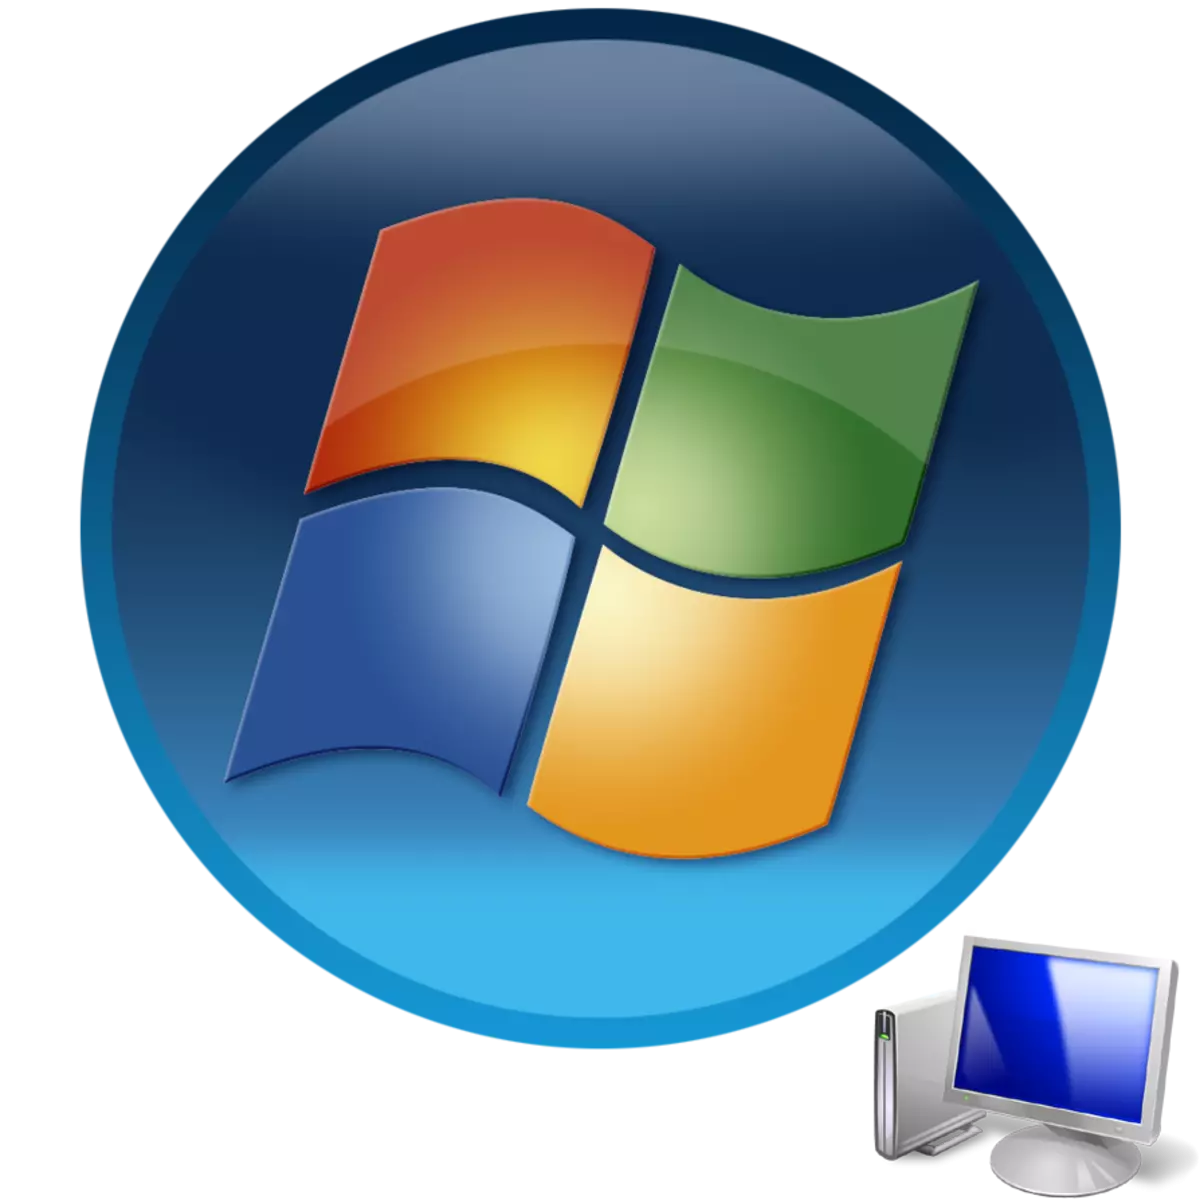 Pornirea unui computer cu sistem de operare Windows 7